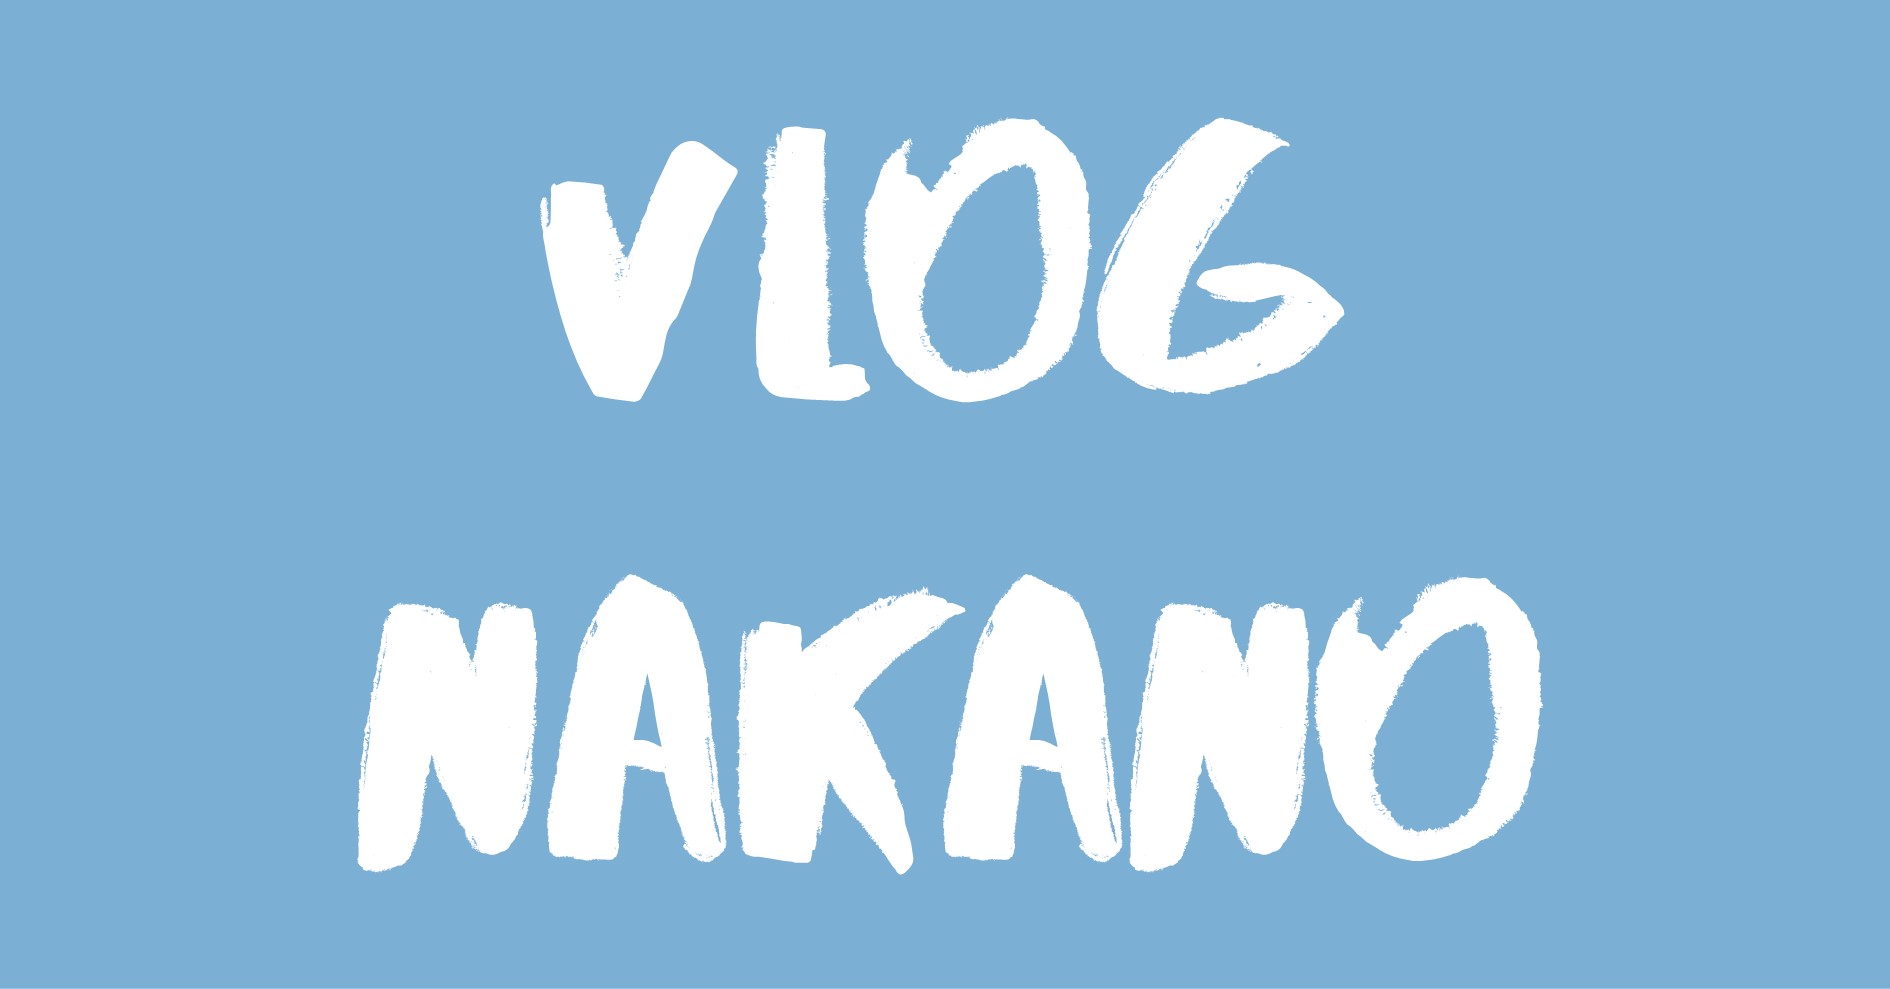 Vlog Nakano